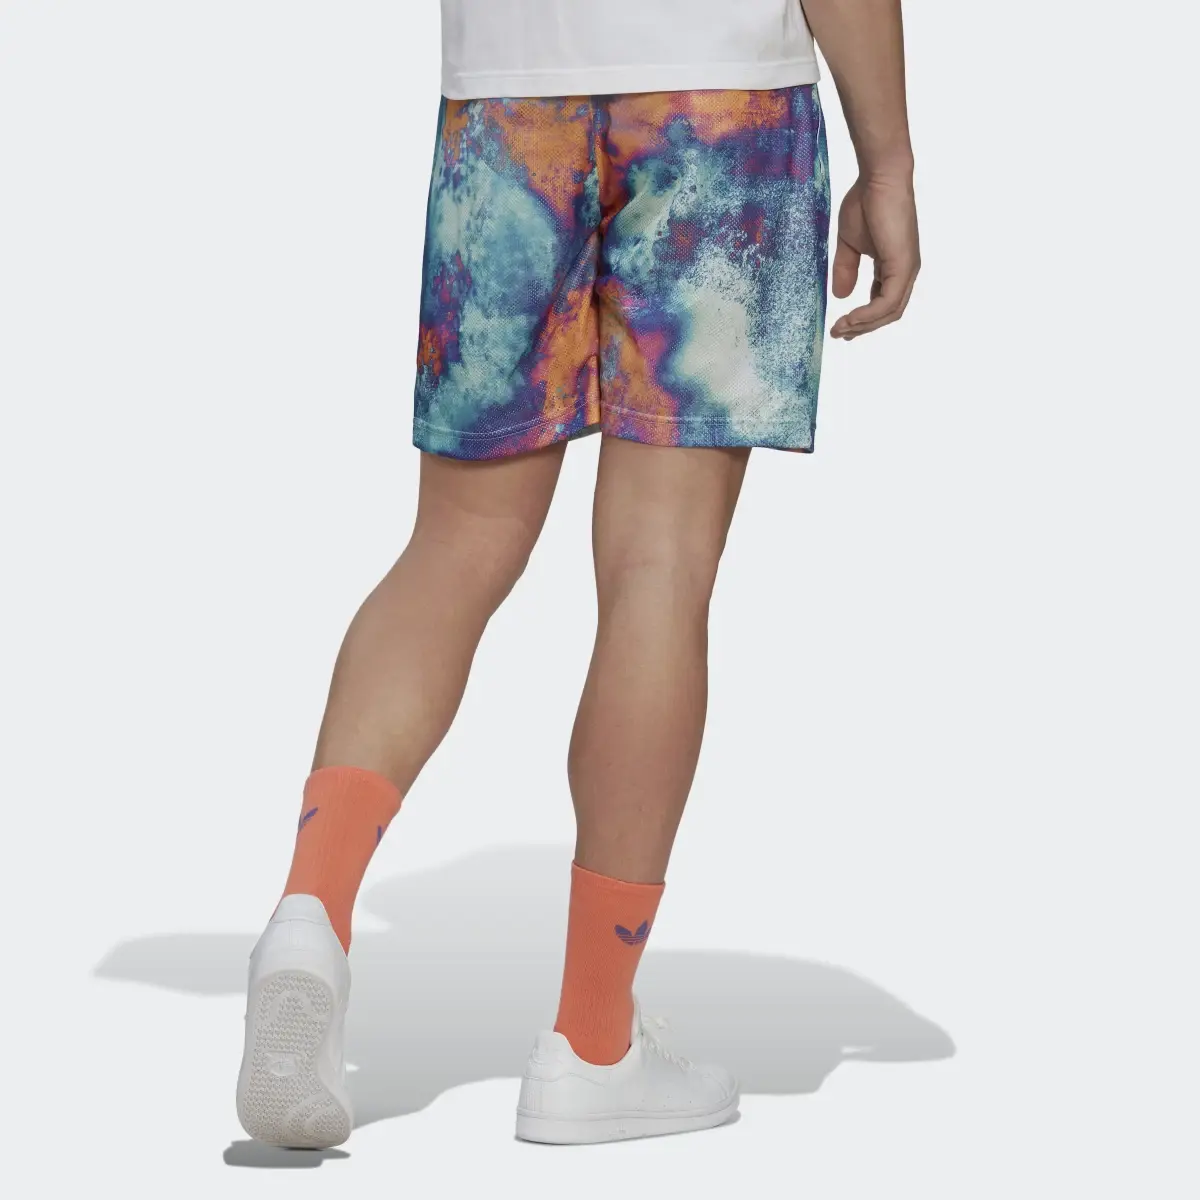 Adidas Allover Print Mesh Shorts. 2